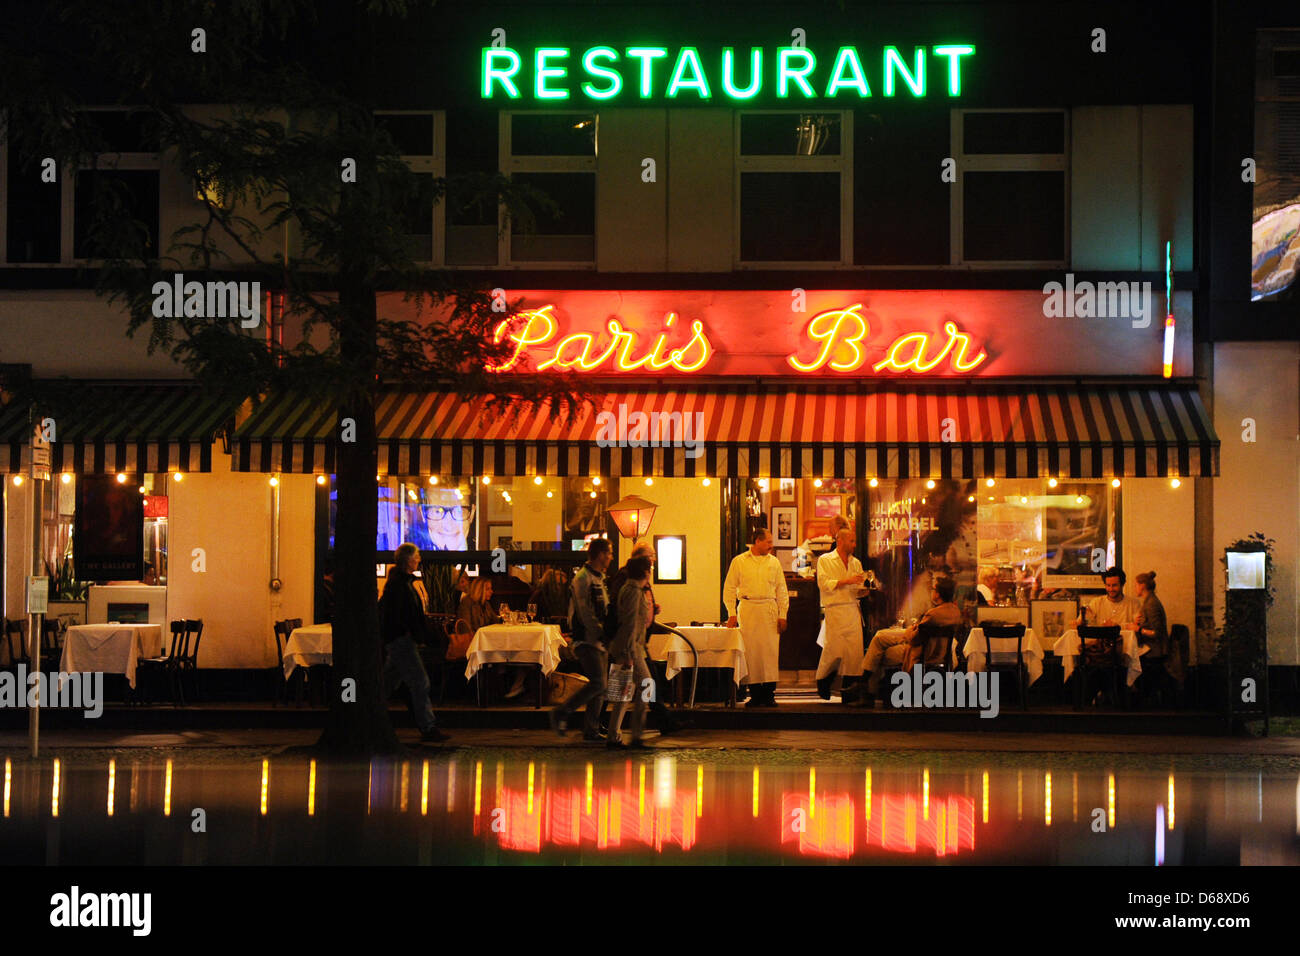 Vista esterna del bar di Parigi di notte in Kantstrasse a Berlino, Germania, 20 luglio 2012. Il bistrò francese nel quartiere Charlottenburg è un luogo popolare con artisti e attori. Foto: Jens Kalaene Foto Stock